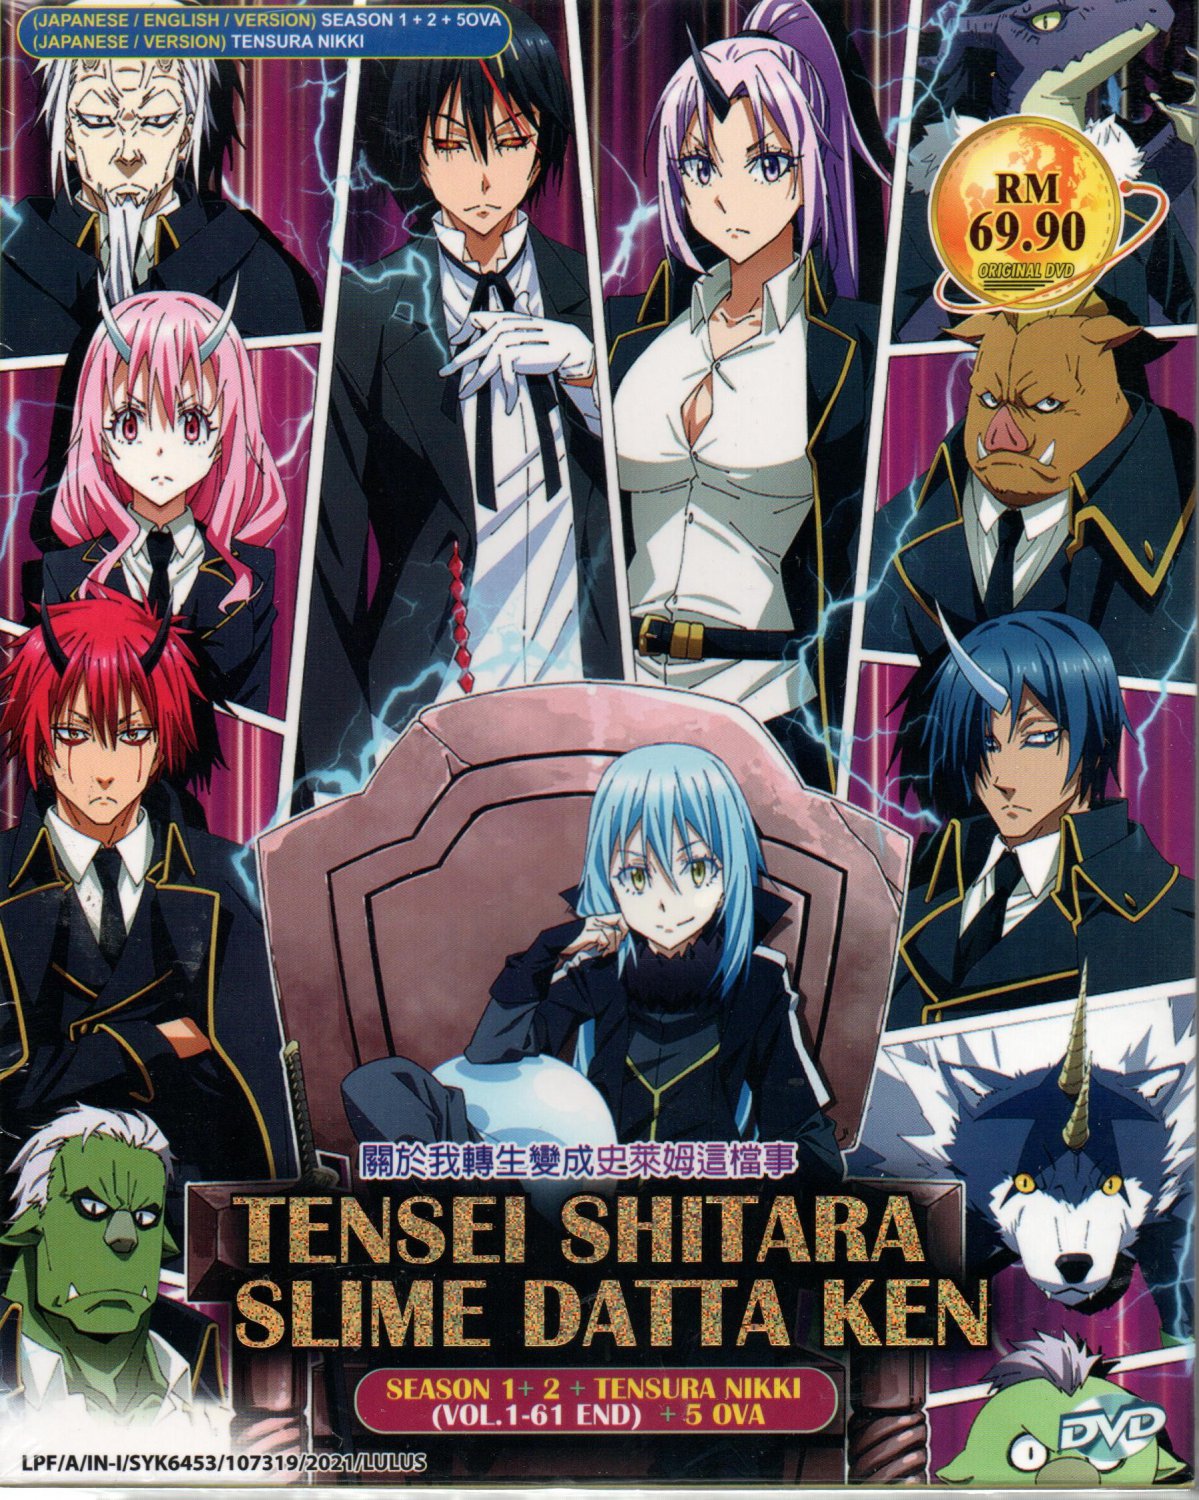 Anime DVD Tensei Shitara Slime Datta Ken Season 1+2 + Tensura Nikki + 5OVA